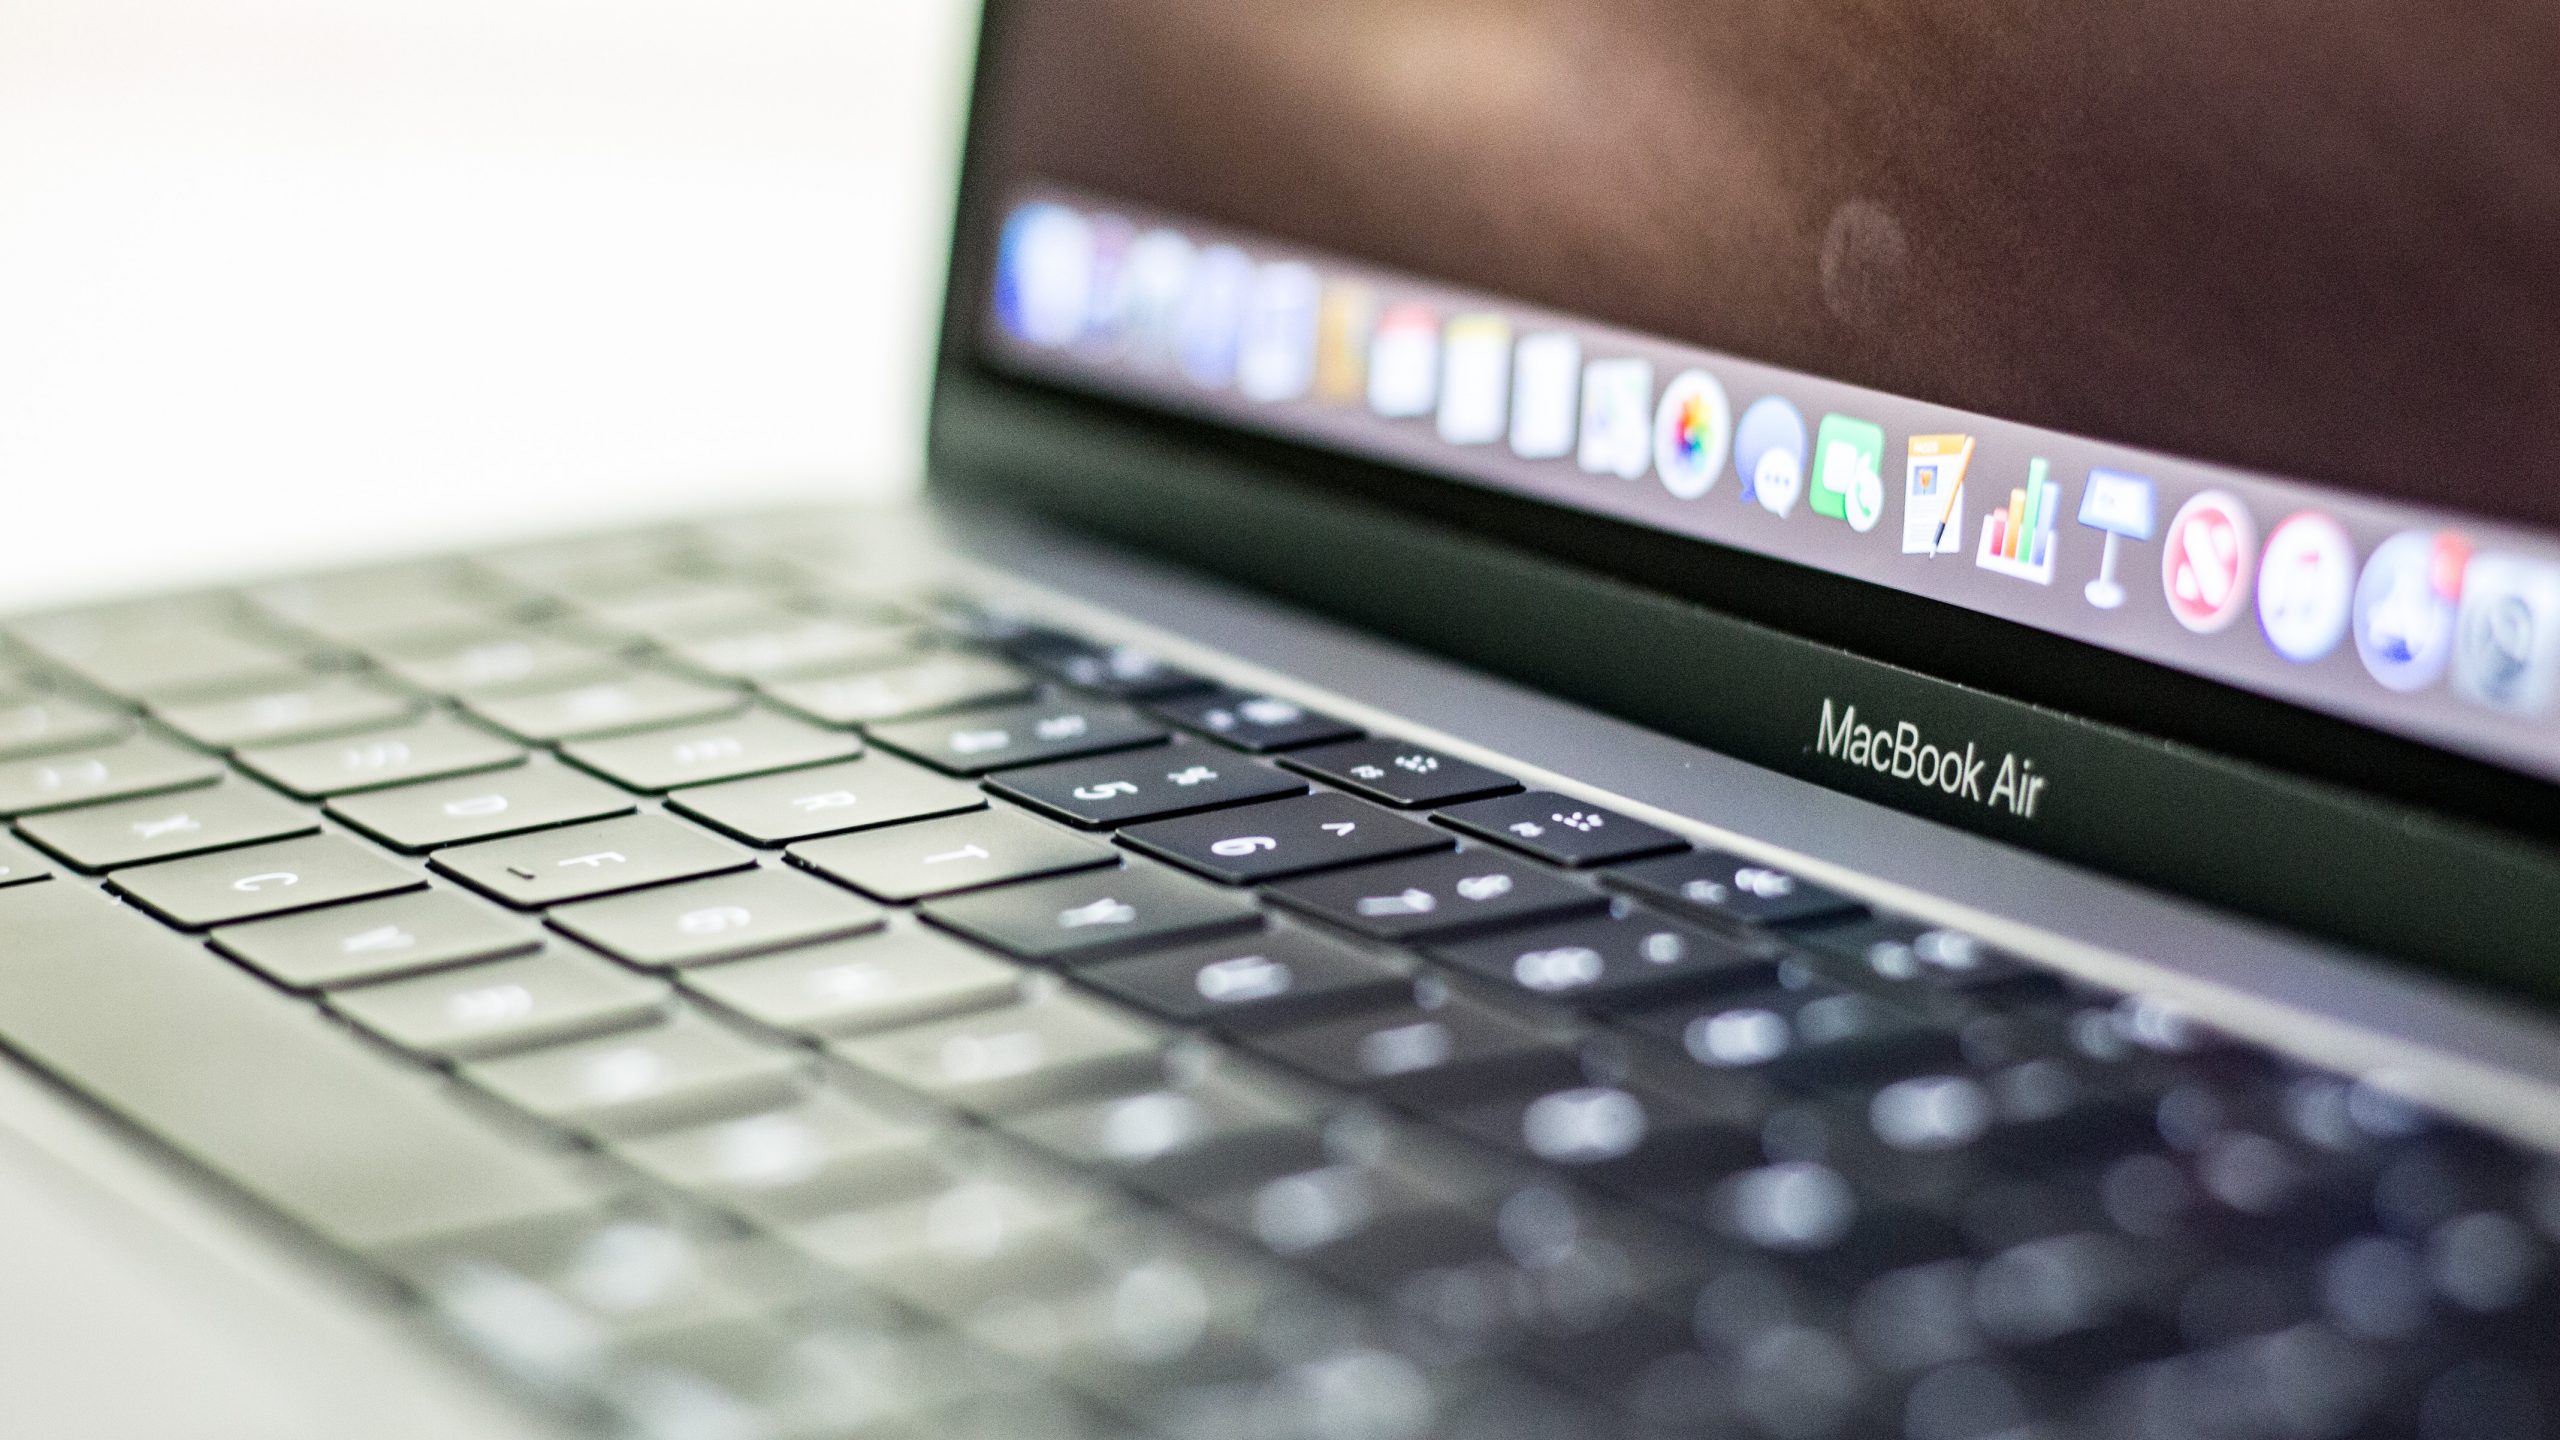 Compra de um MacBook remodelado: o que você precisa saber